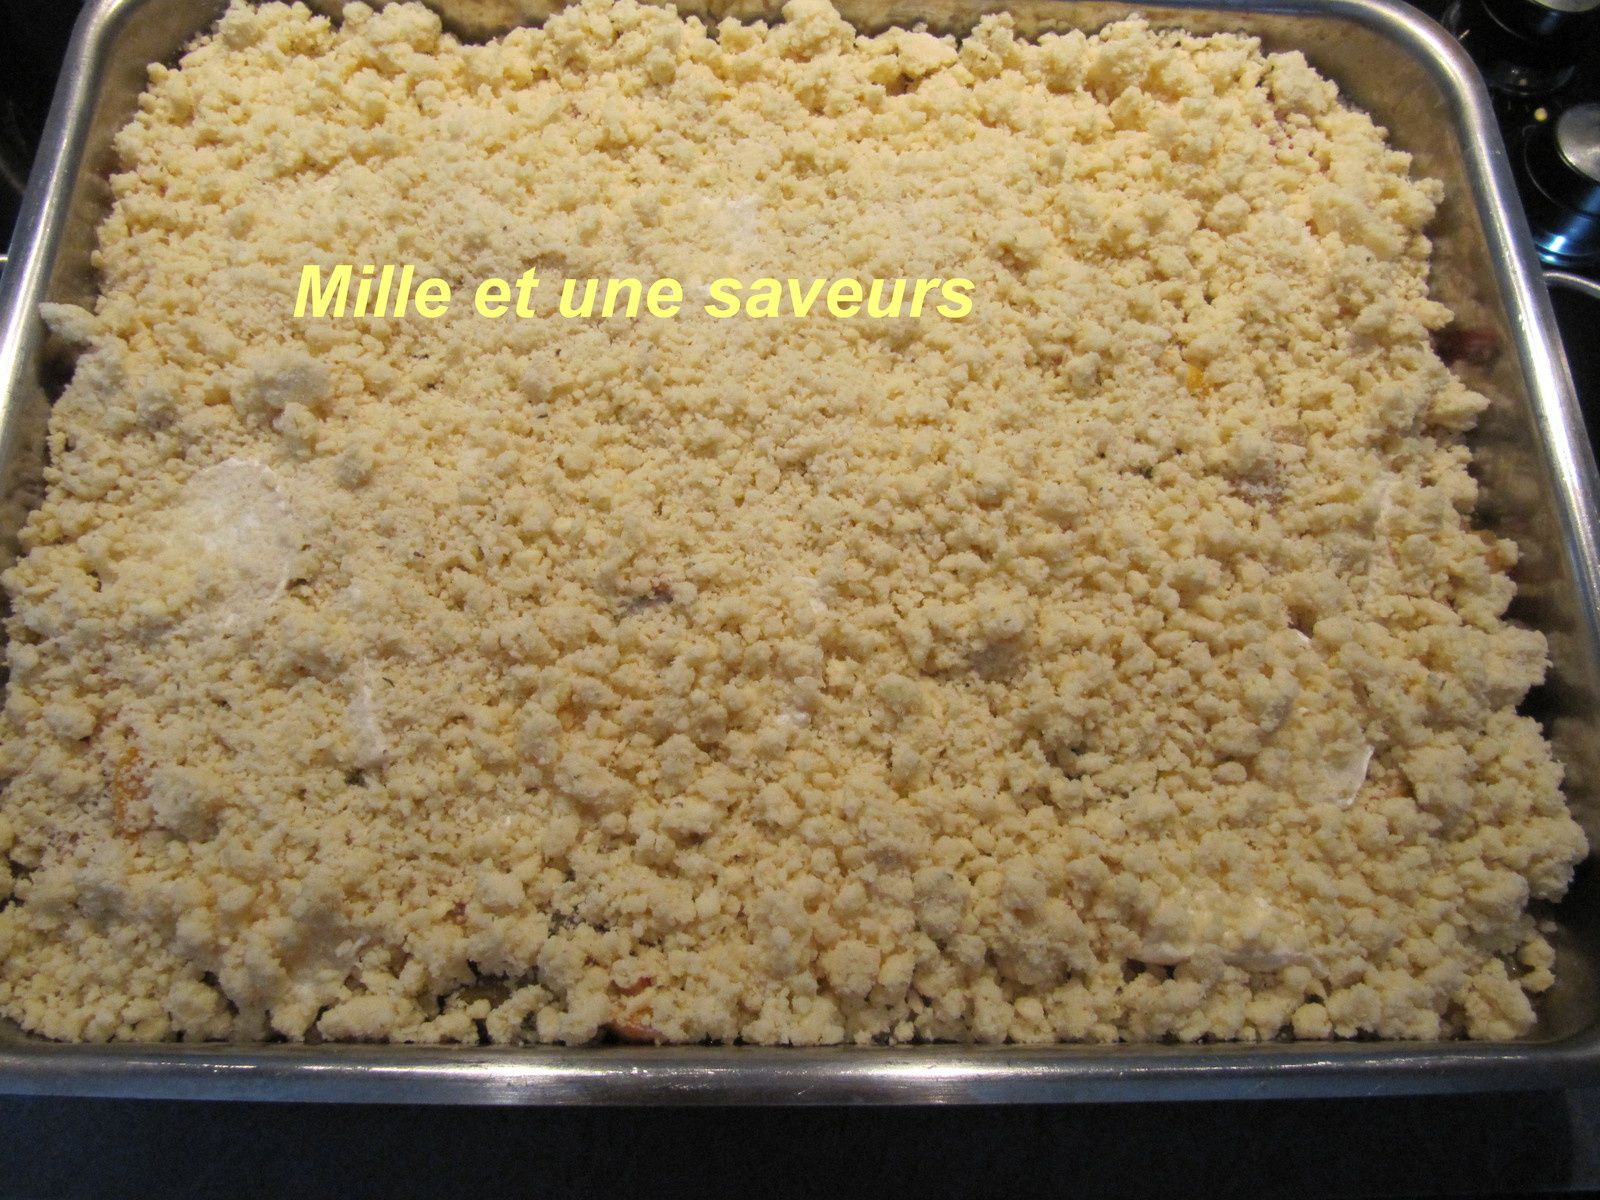 Mettre la pâte à crumbe : 200 gr de beurre mou , 200 gr de fromage parmesan, 200 gr de farine, le tout égrainé